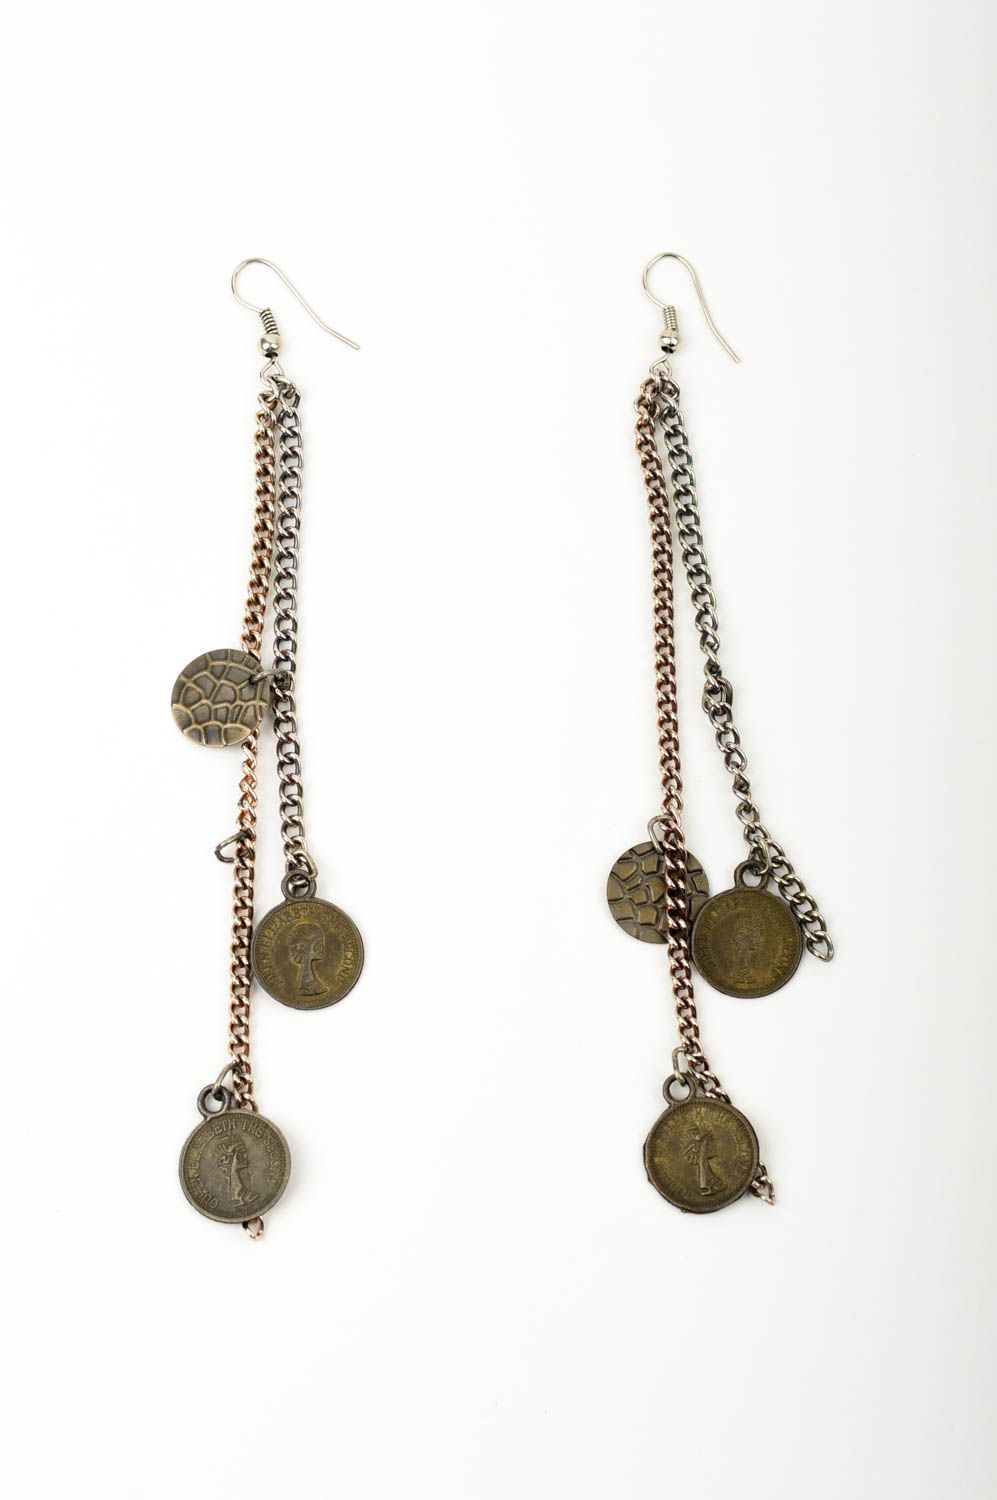 Длинные серьги ручной работы серьги женские с монетками металлические серьги фото 1